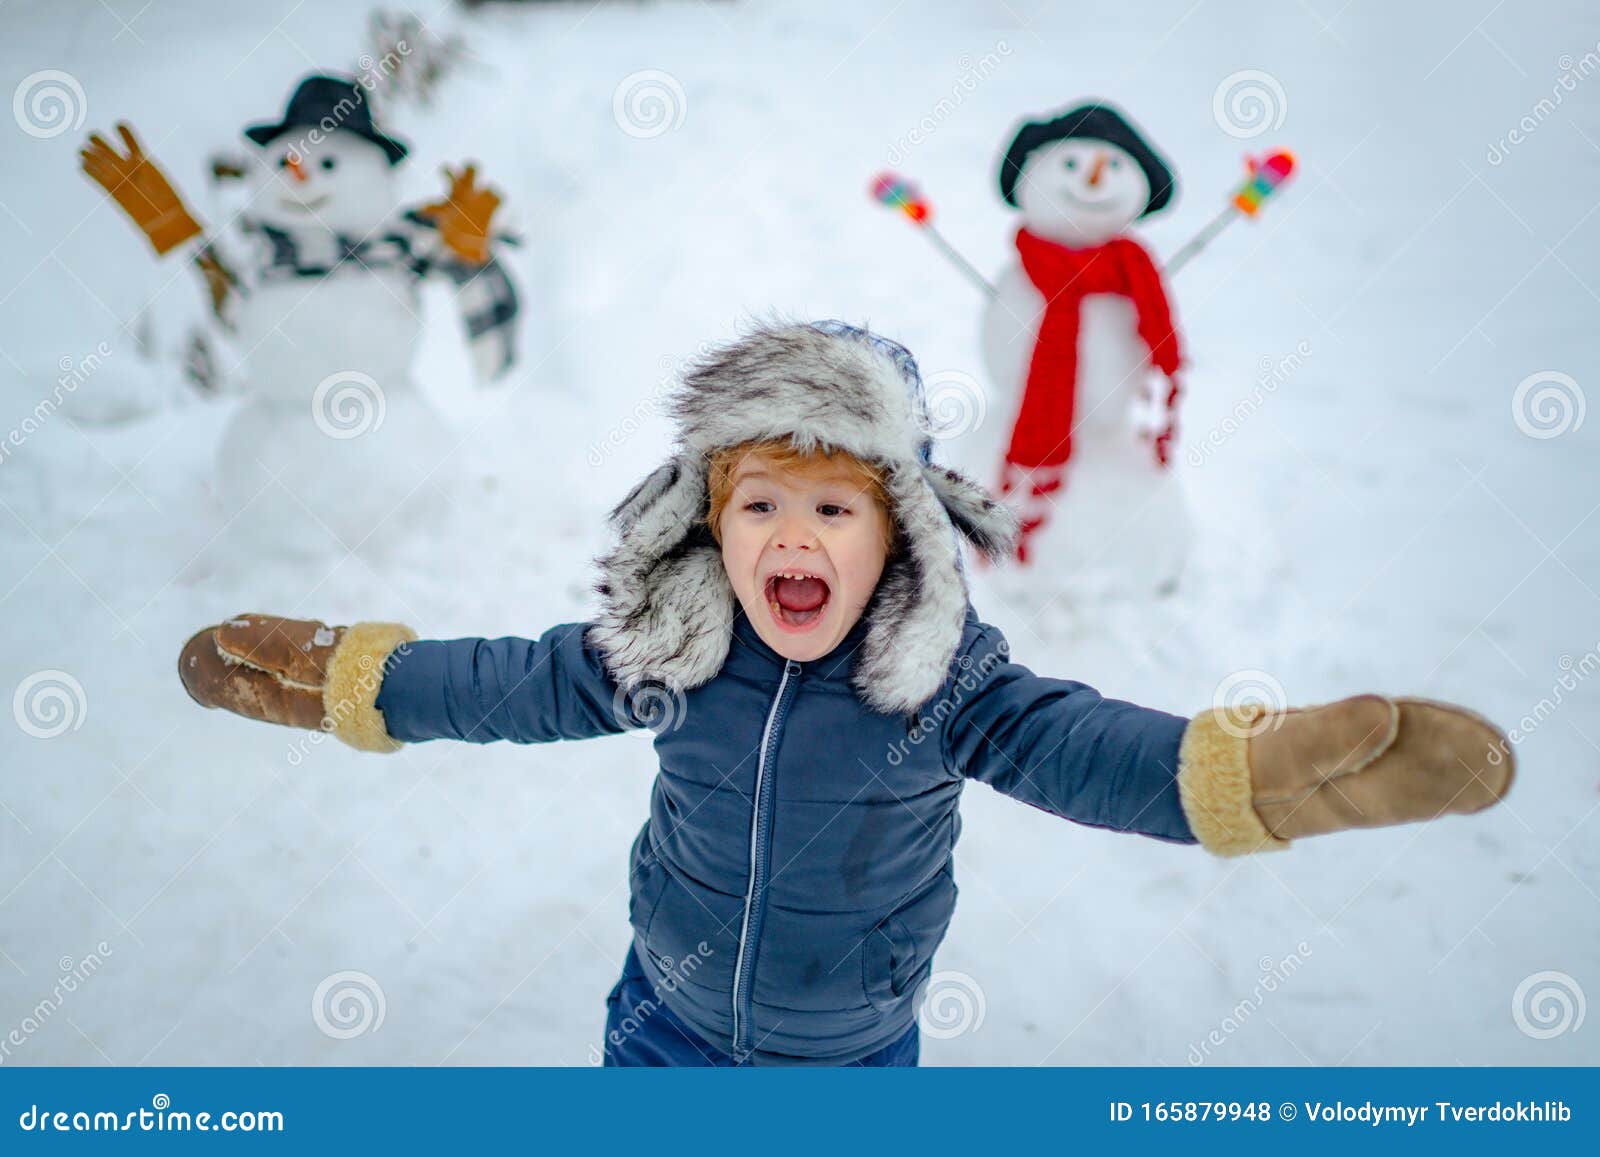 Gefeliciteerd, Winterportret Kinderen Sneeuw Gelukkig Kind Dat Speelt Met Een Sneeuwpop Op Een Sneeuwwandeling Kinderen Stock Foto - Image of leuk: 165879948